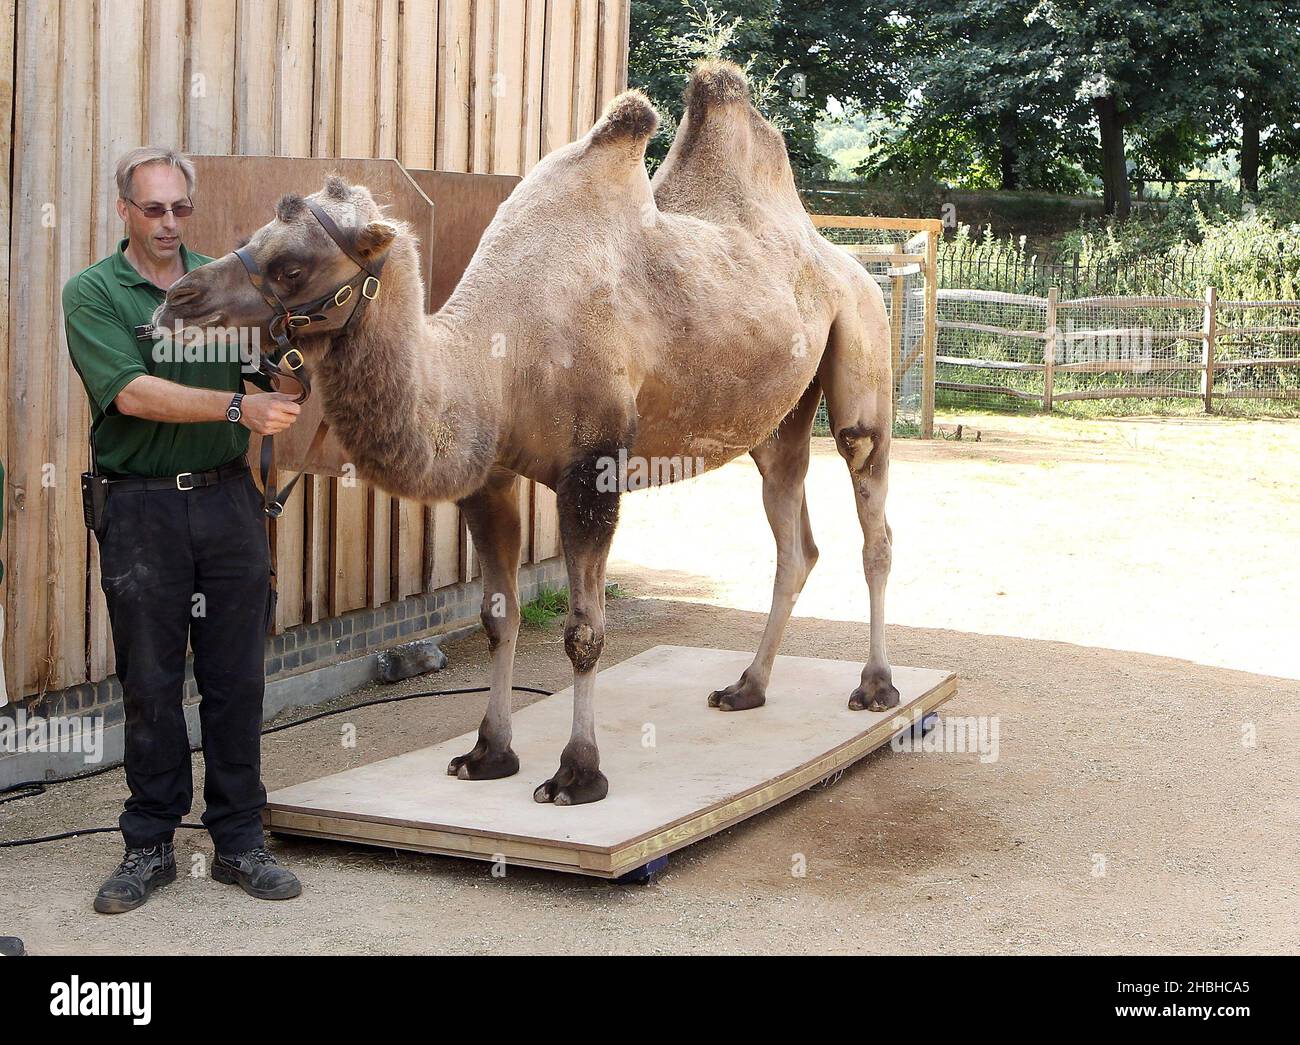 Gengkis, der Camel, steht auf einer Reihe elektronischer Waagen während der jährlichen Bestandsaufnahme von Gewichten und Größen im London Zoo im Regents Park im Zentrum von London. Stockfoto